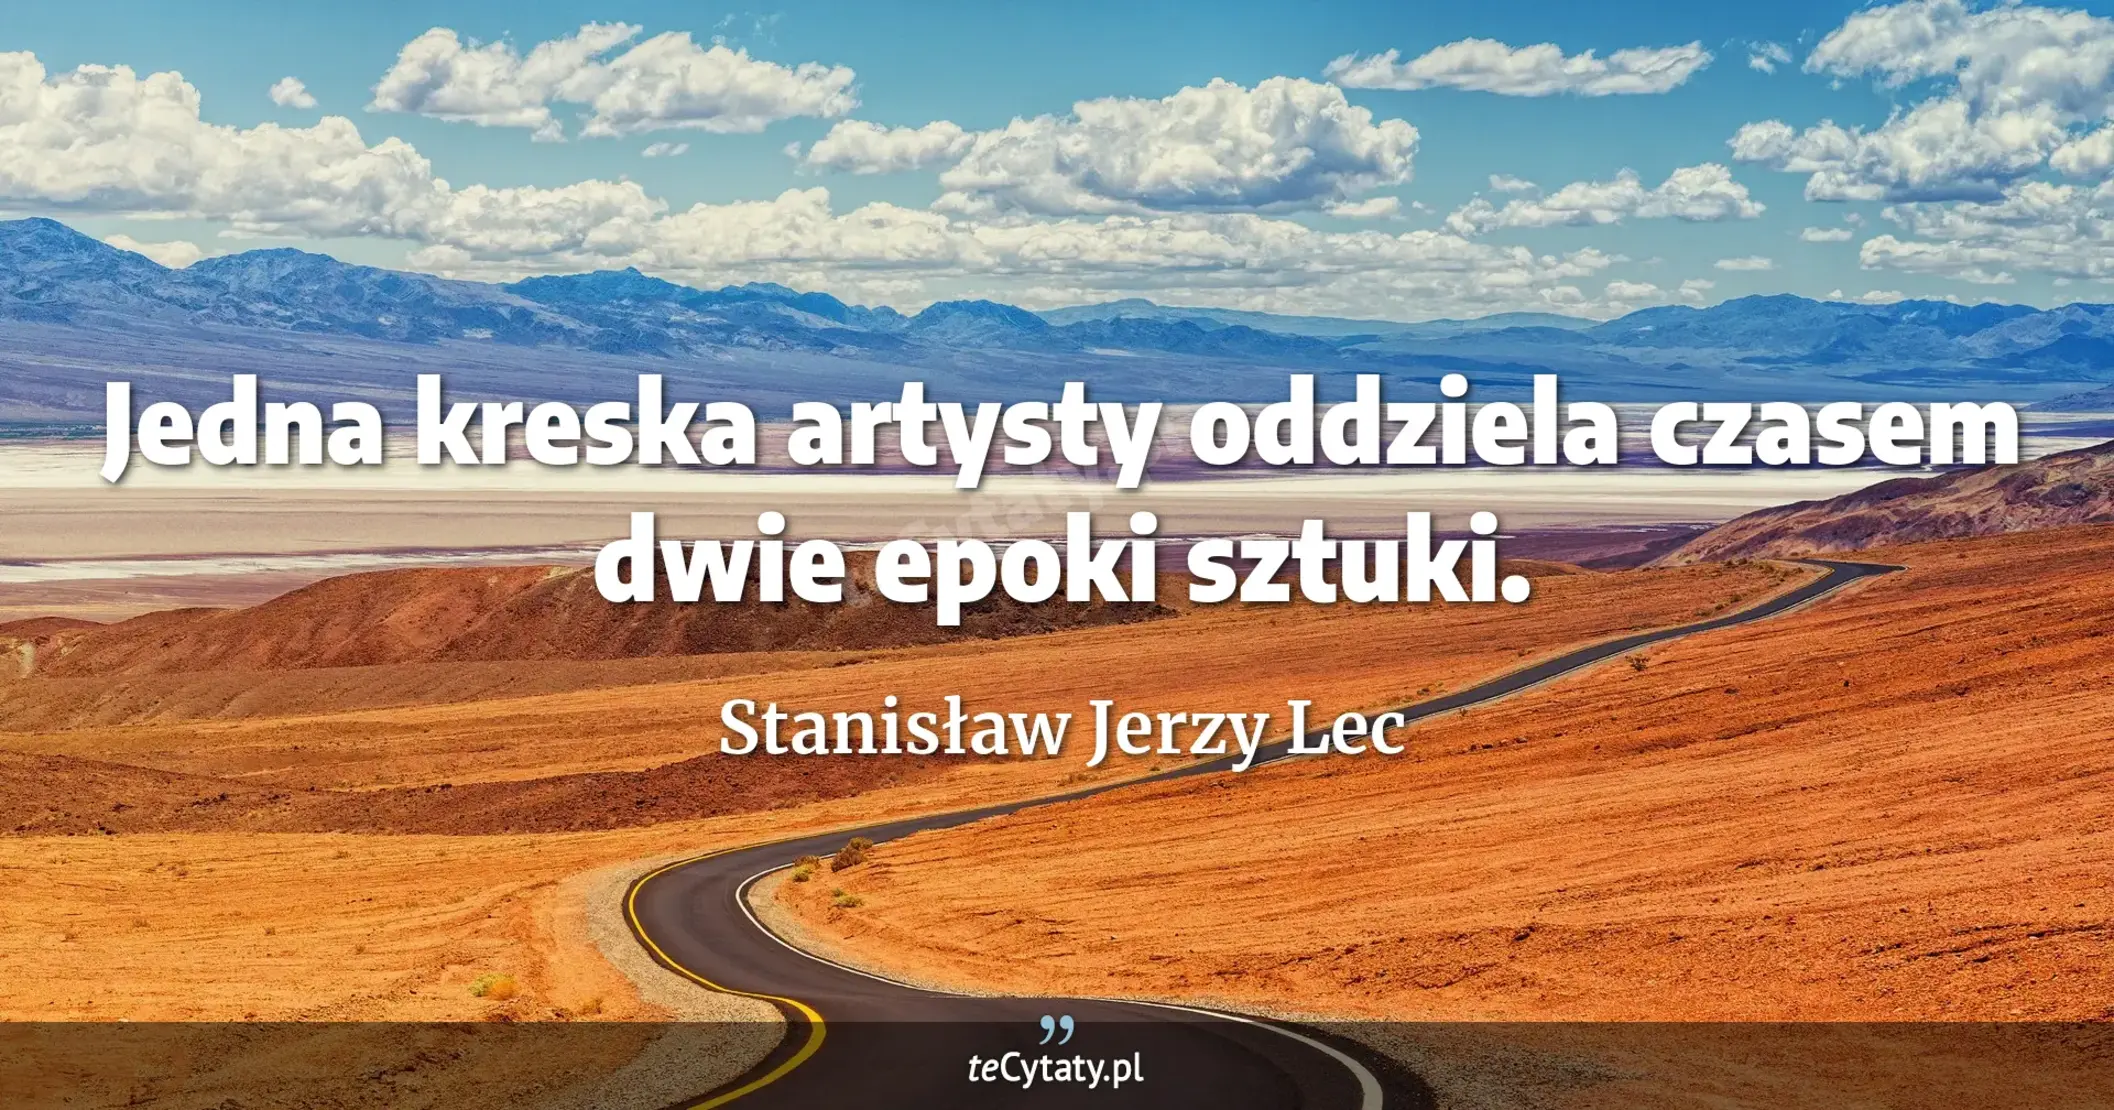 Jedna kreska artysty oddziela czasem dwie epoki sztuki. - Stanisław Jerzy Lec